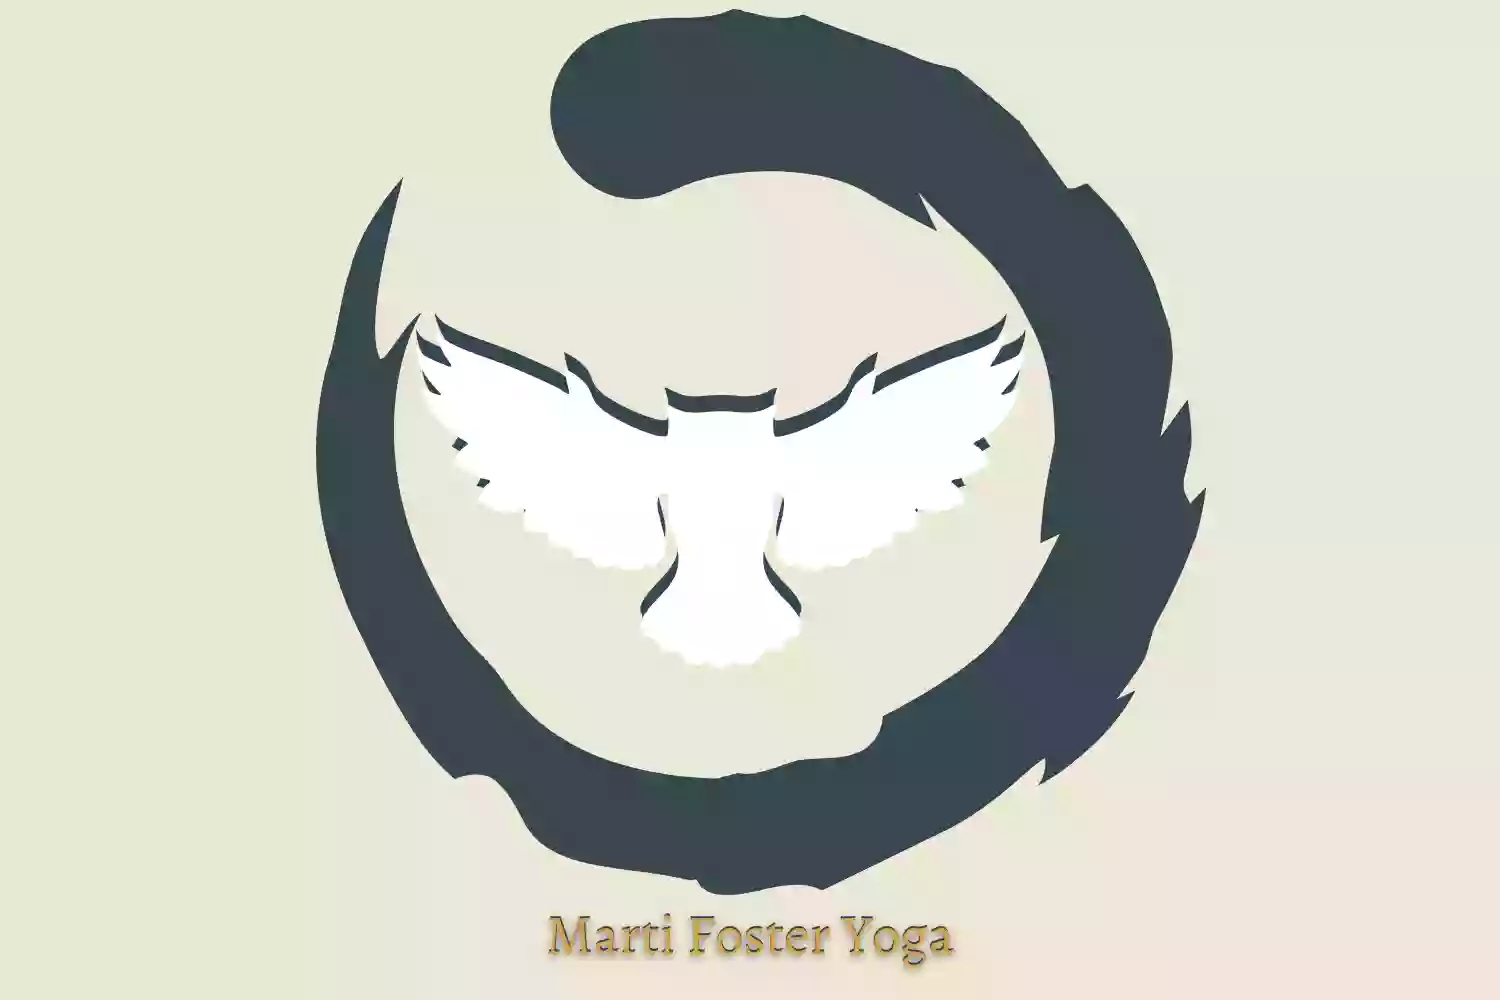 Marti Foster Yoga